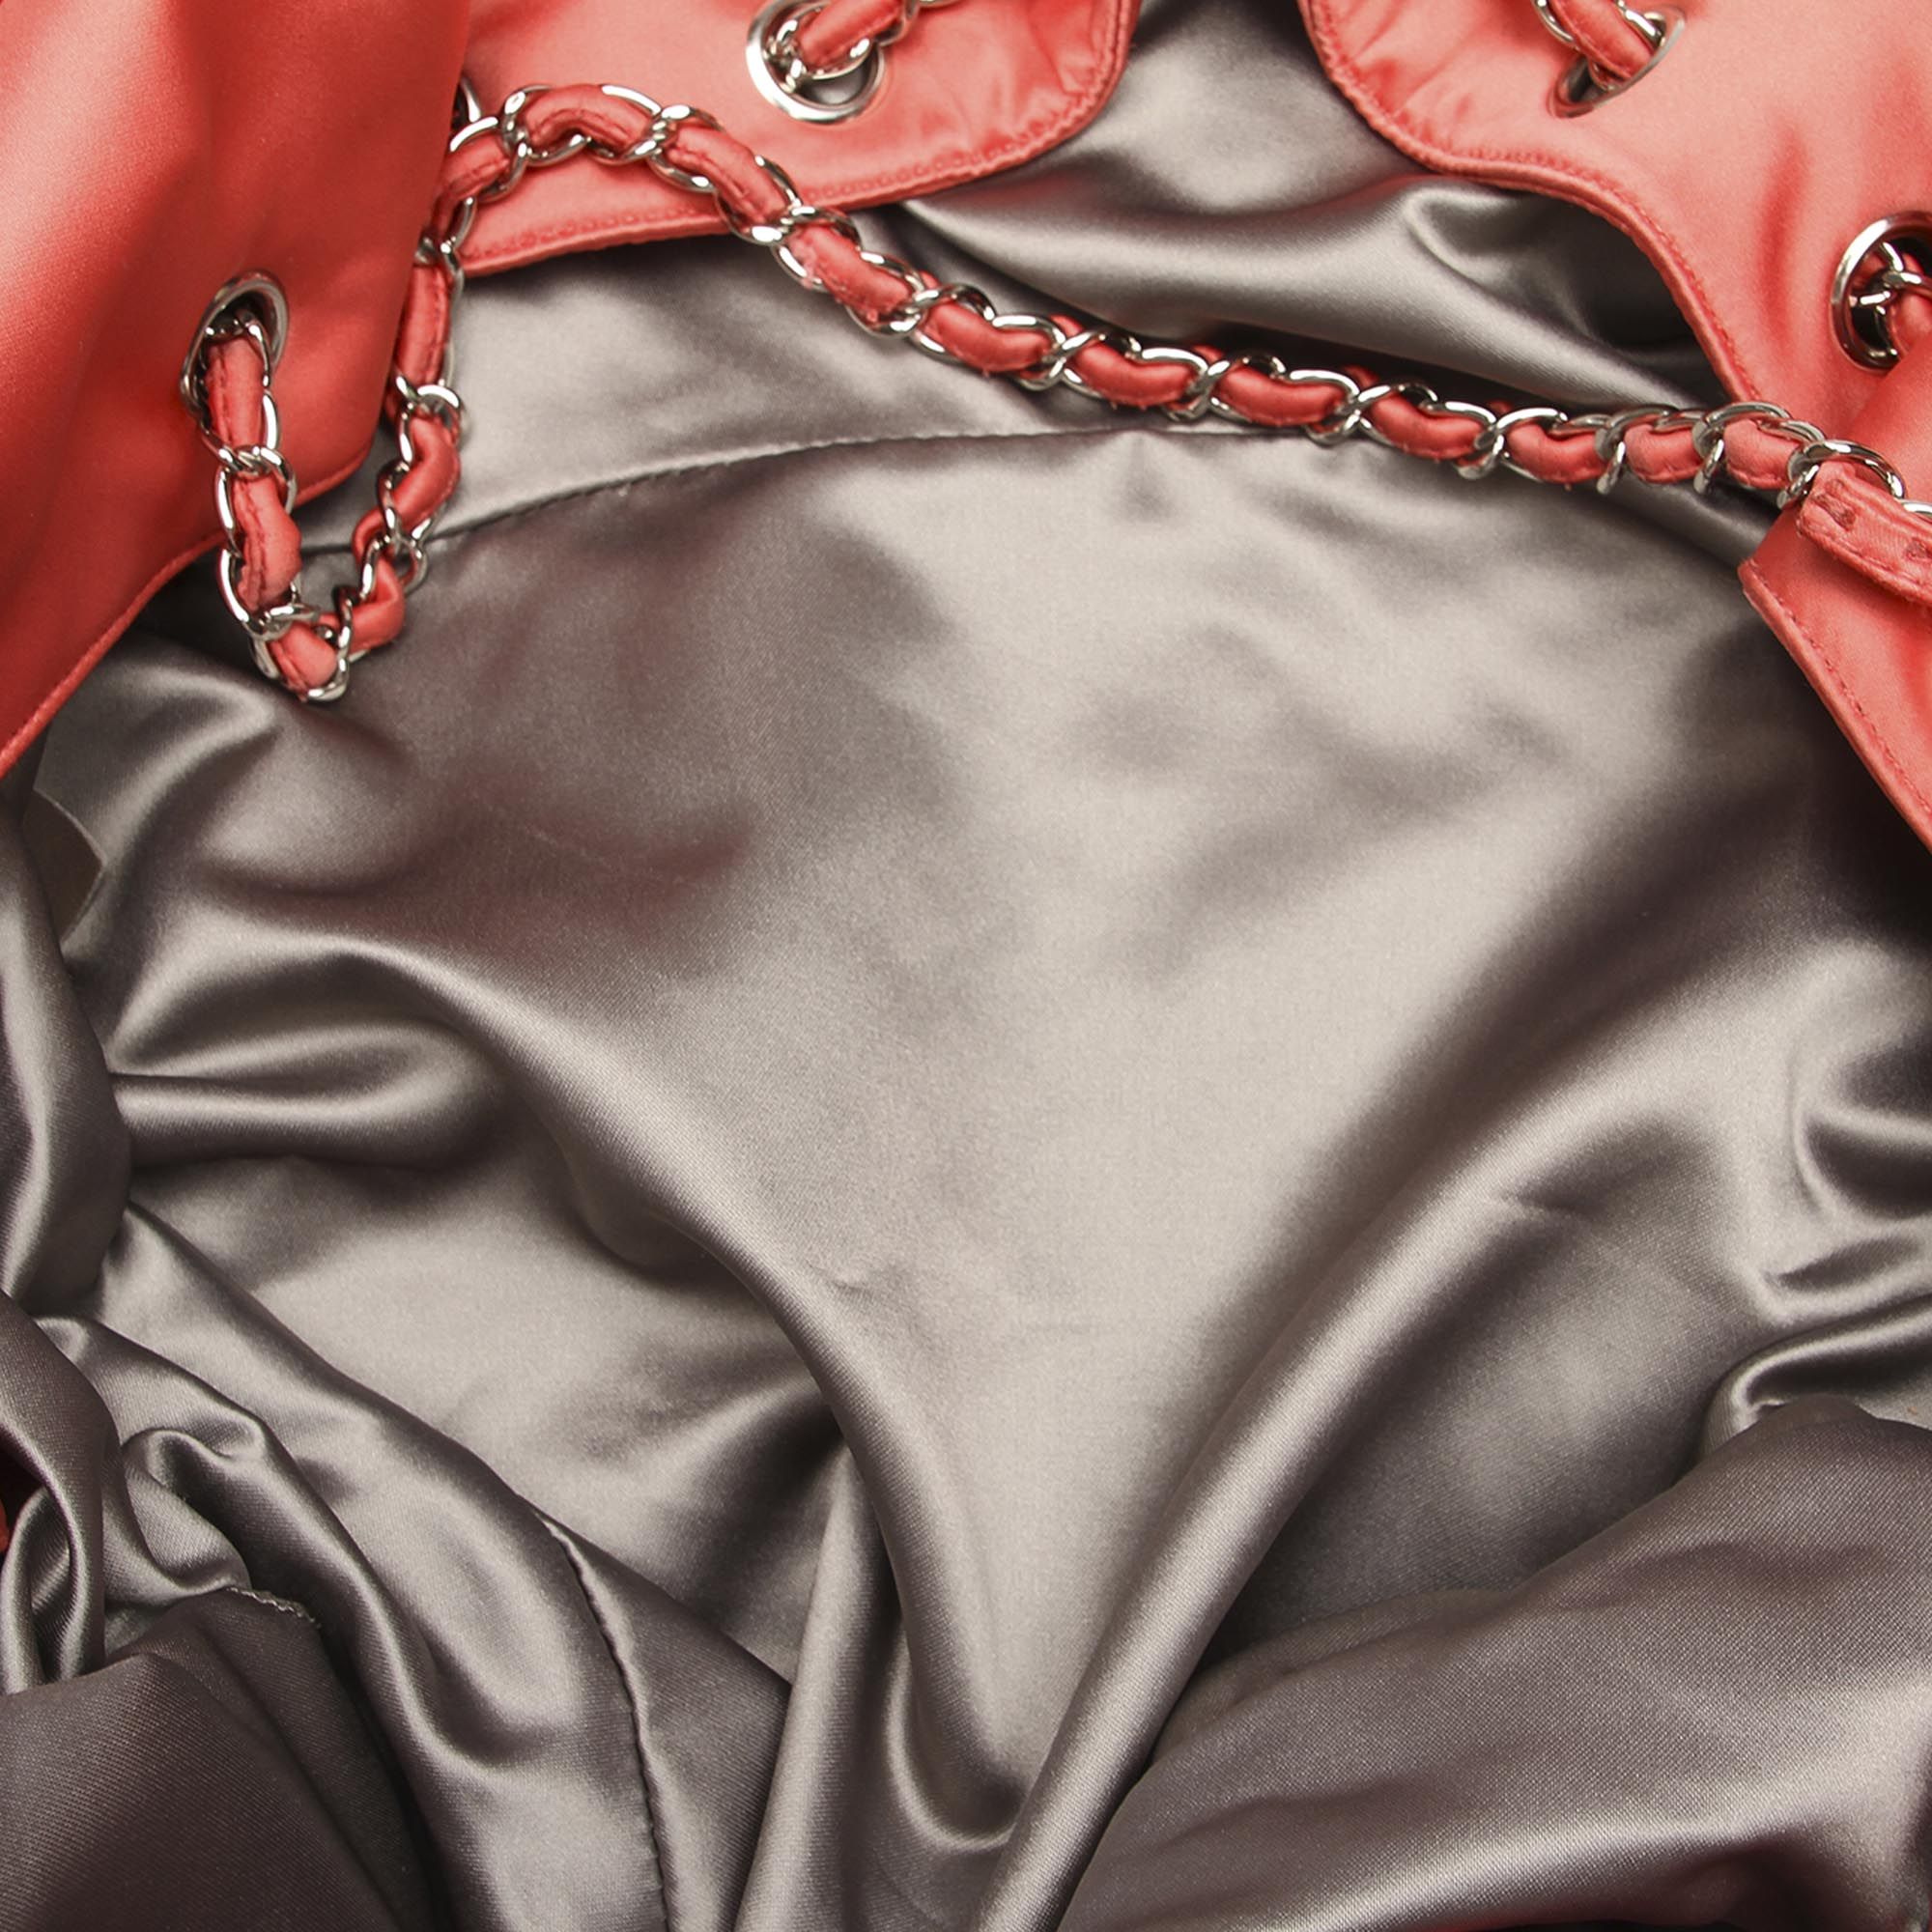 Vintage Chanel Melrose Cabas Satin Shoulder Bag Pink